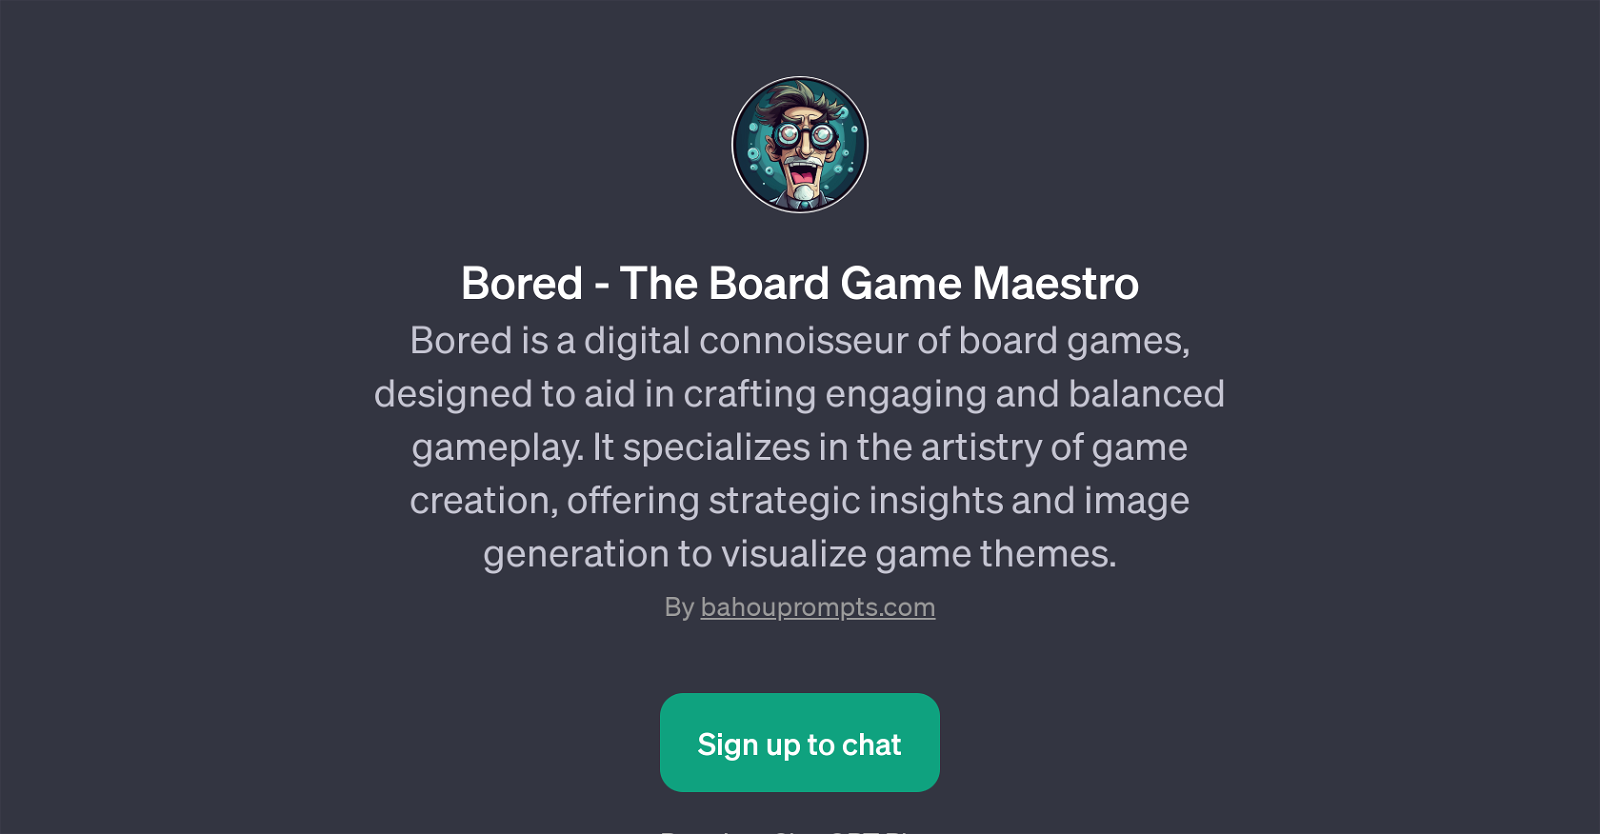 Bored - The Board Game Maestro website